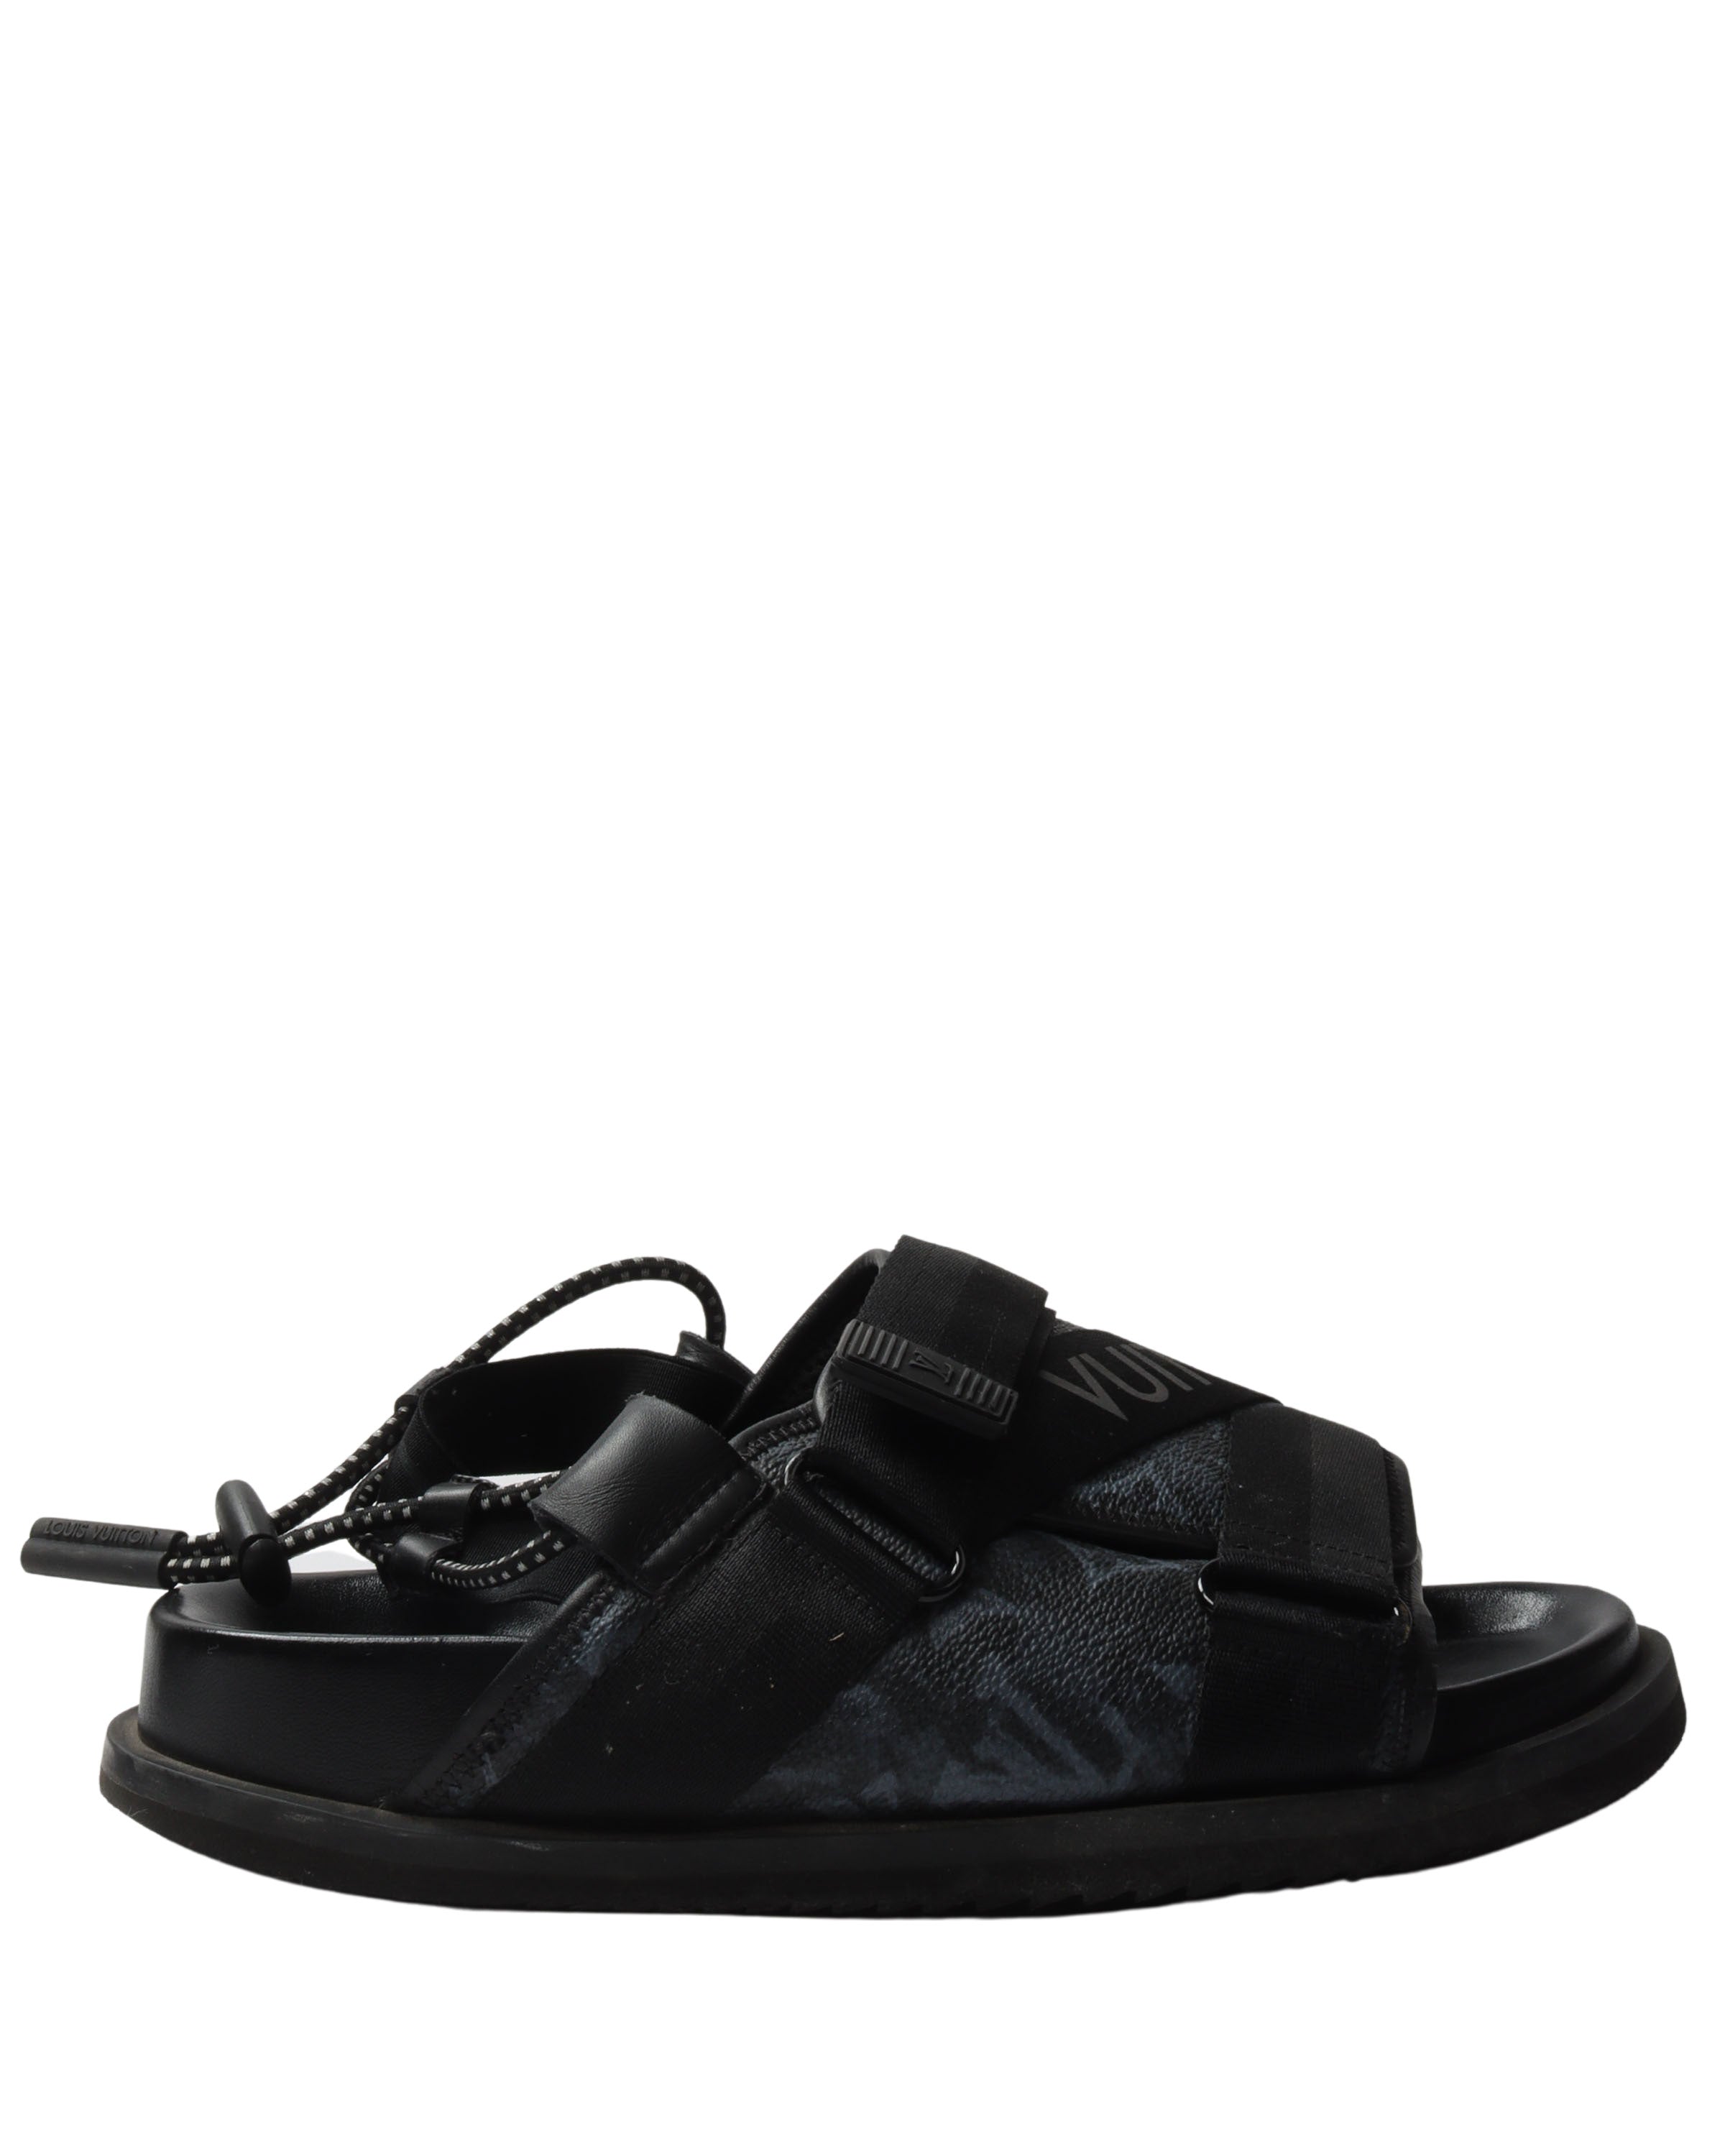 Louis Vuitton HONOLULU MULE Slides - White Sandals, Shoes